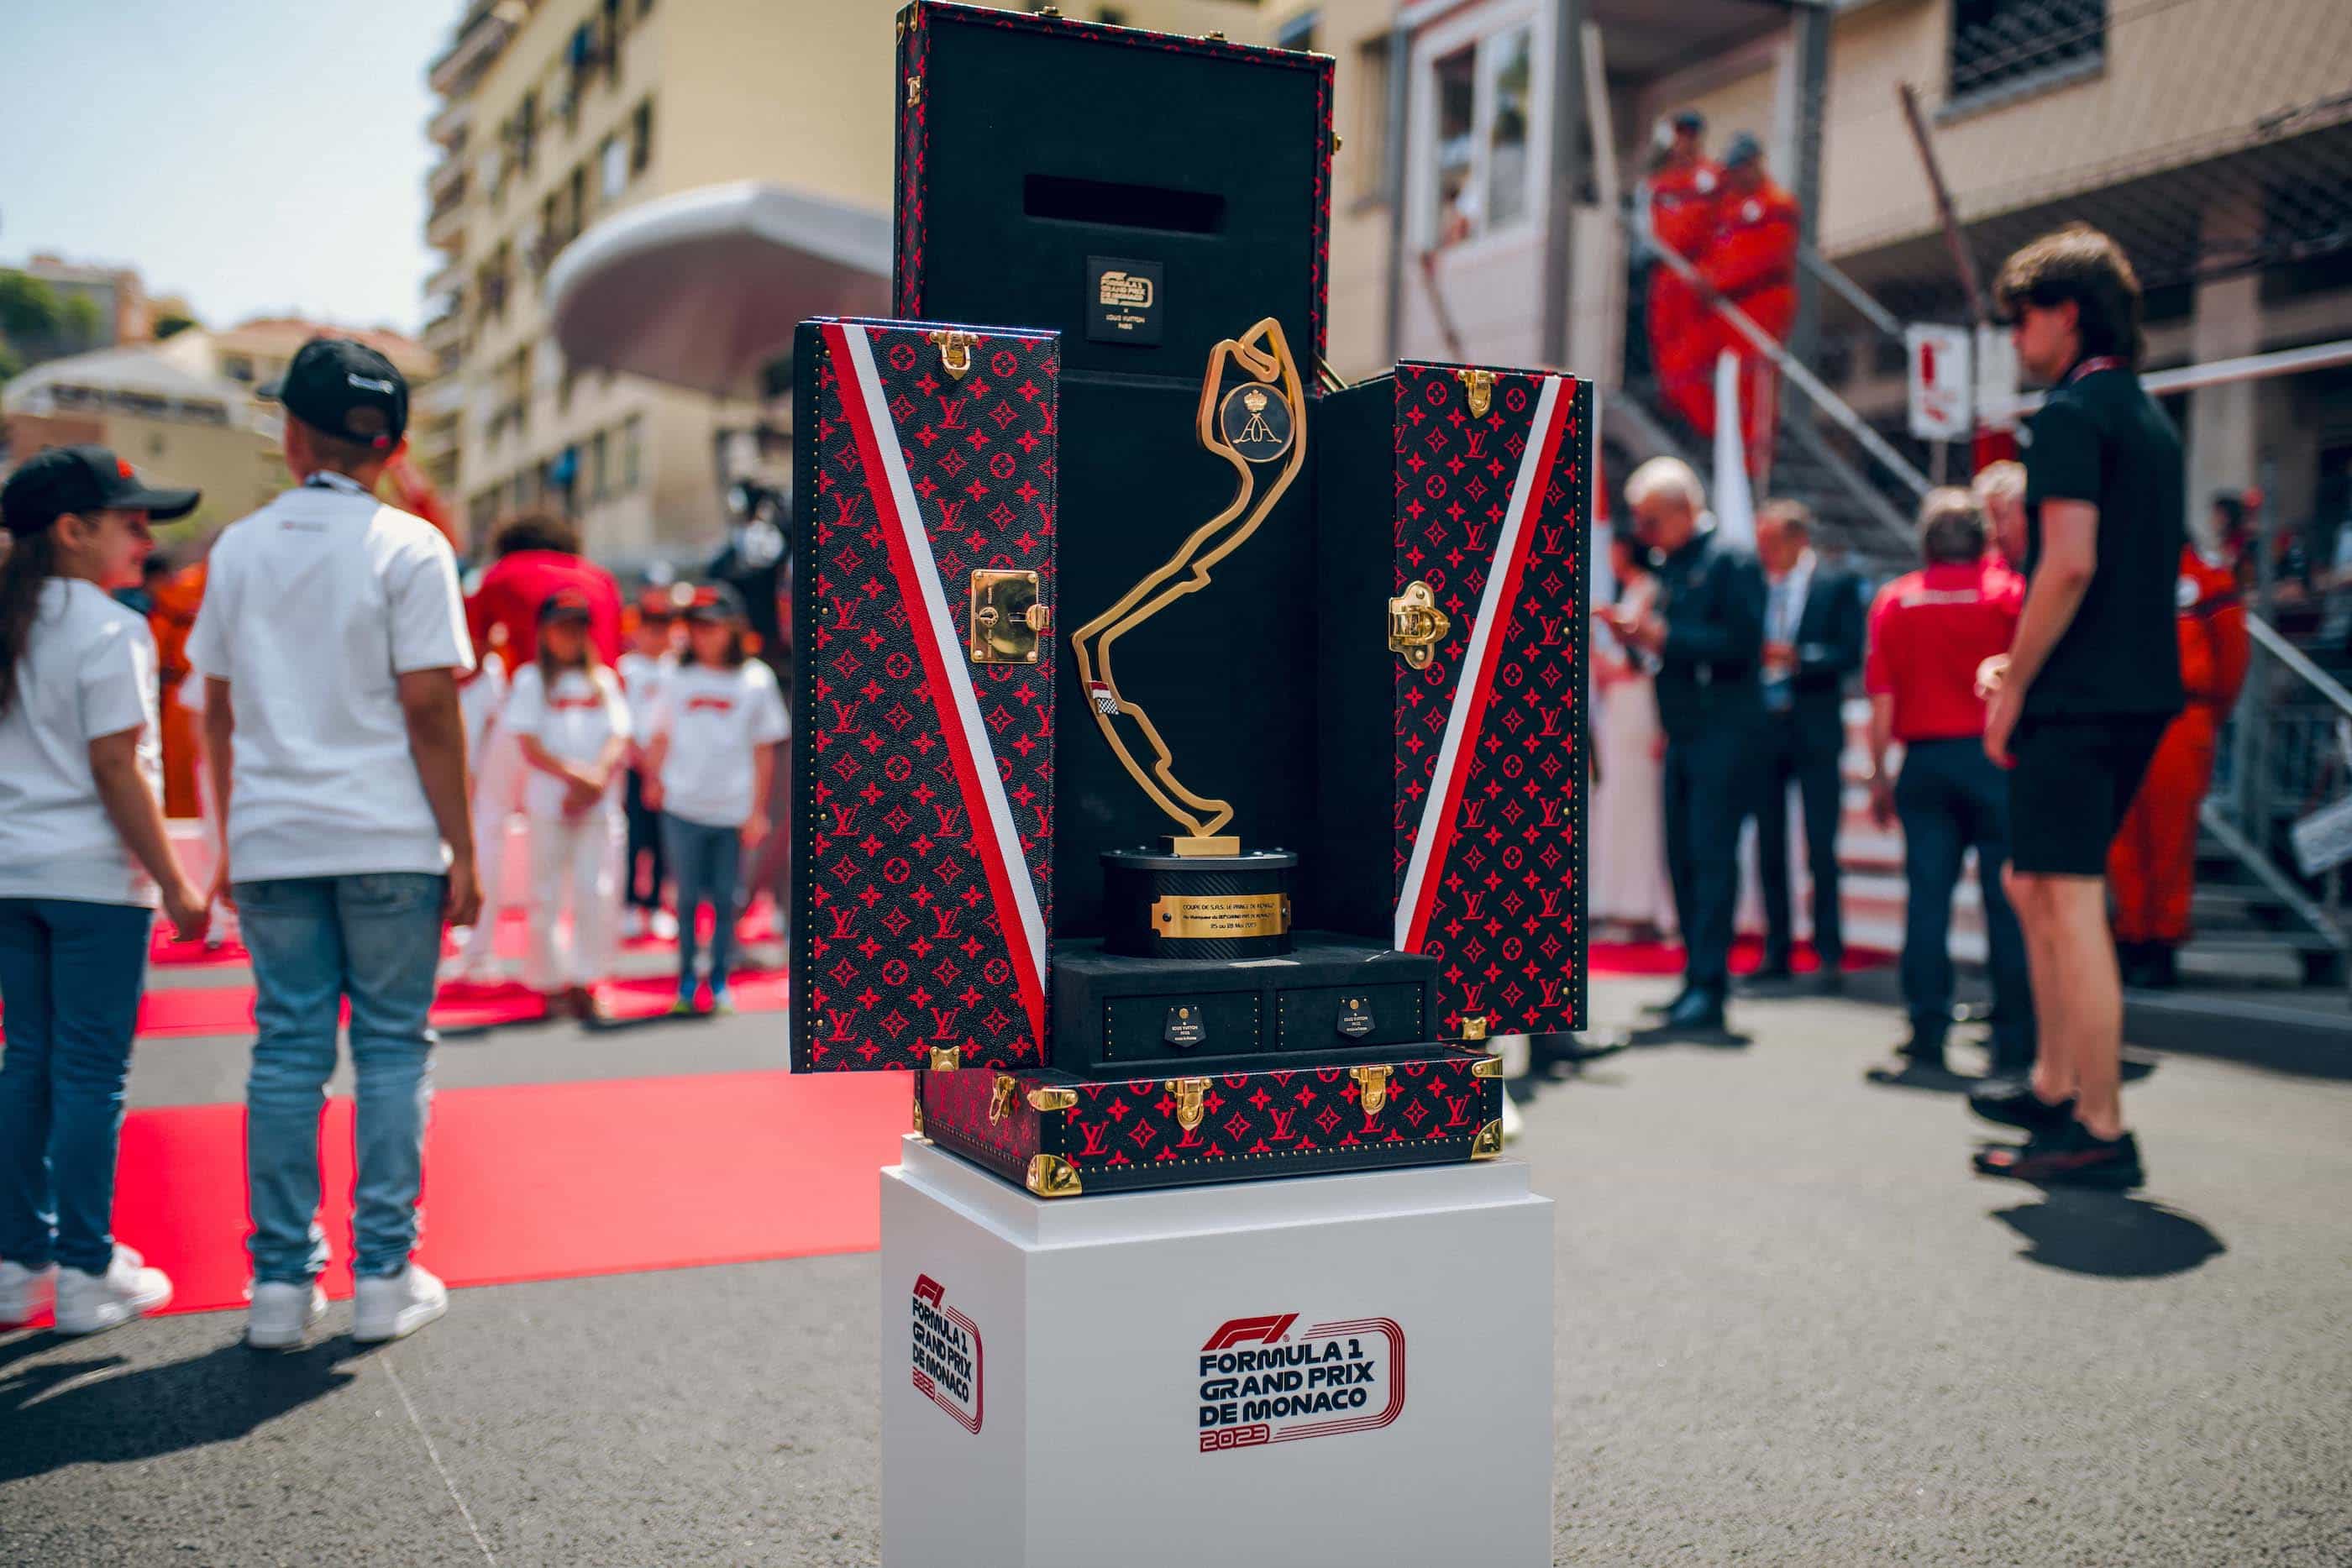 Monaco Grand Prix travels in the exclusive Louis Vuitton tunk